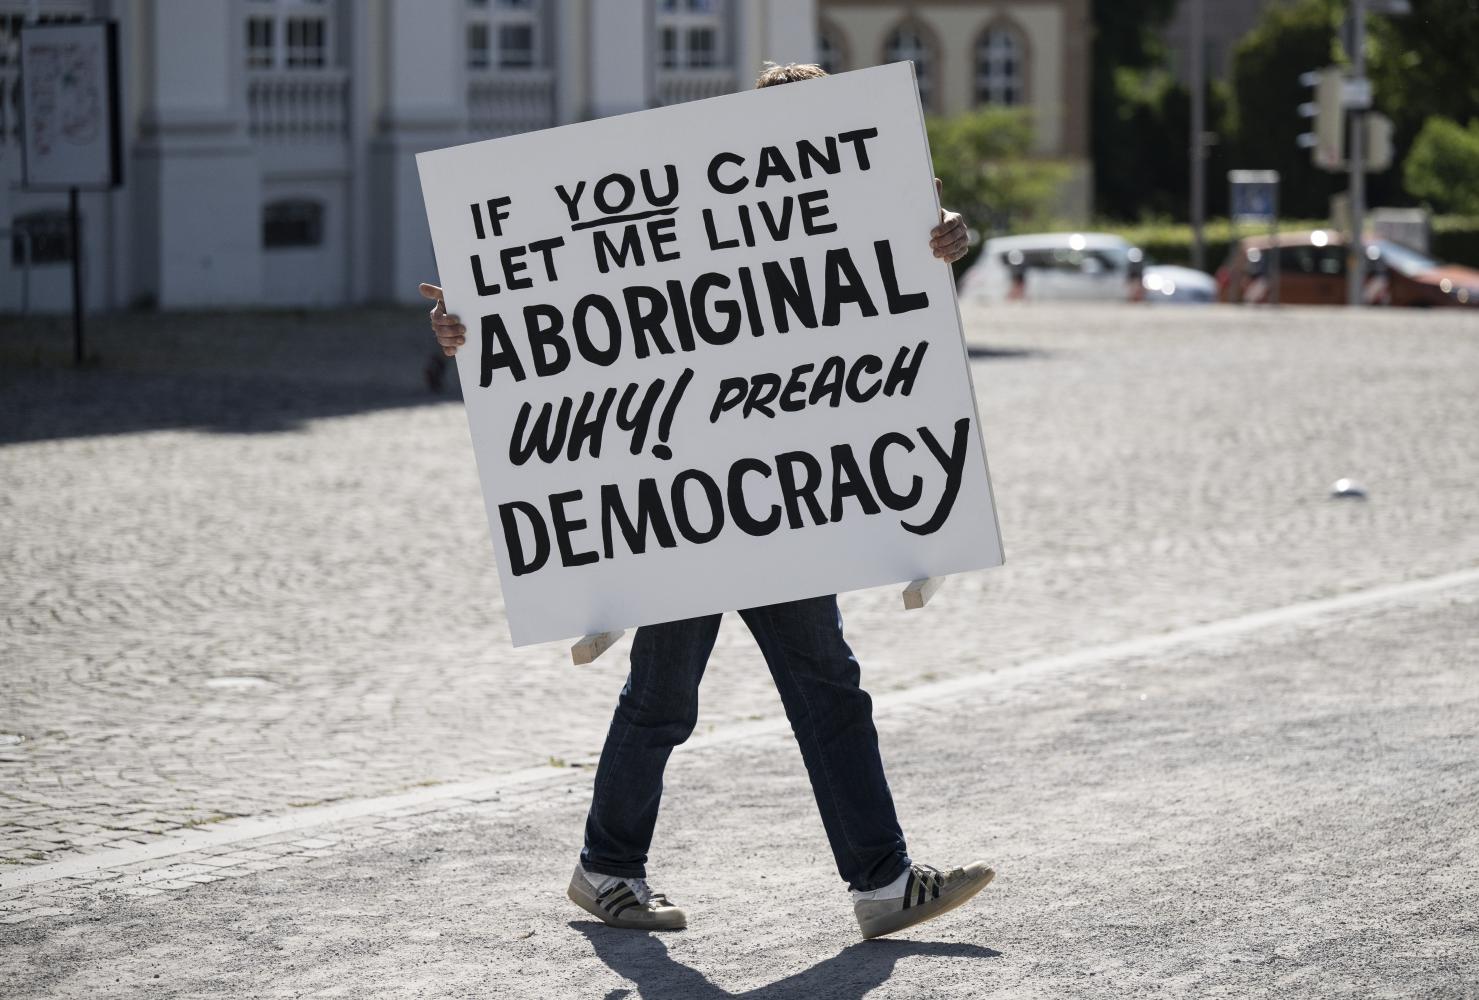 Ein Mann trägt ein Schild mit der Aufschrift "If you can’t let me live aboriginal, why preach democrazy" zu einer Installation, die sich mit dem Schicksal der Aborigines in Australien befasst